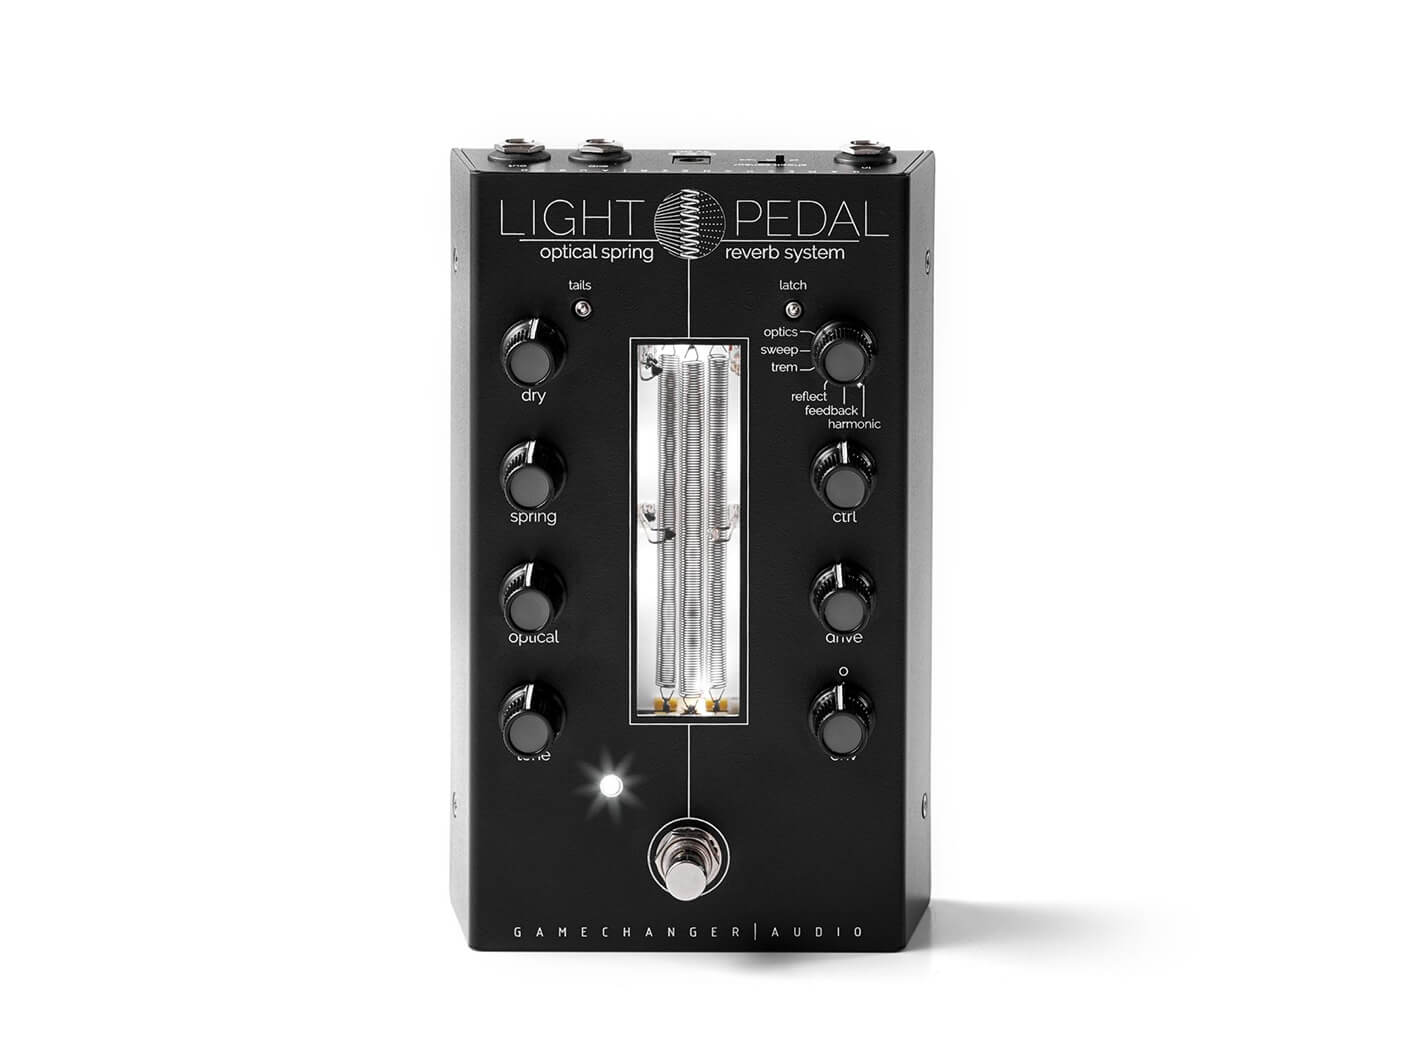 gamechanger audio light pedal